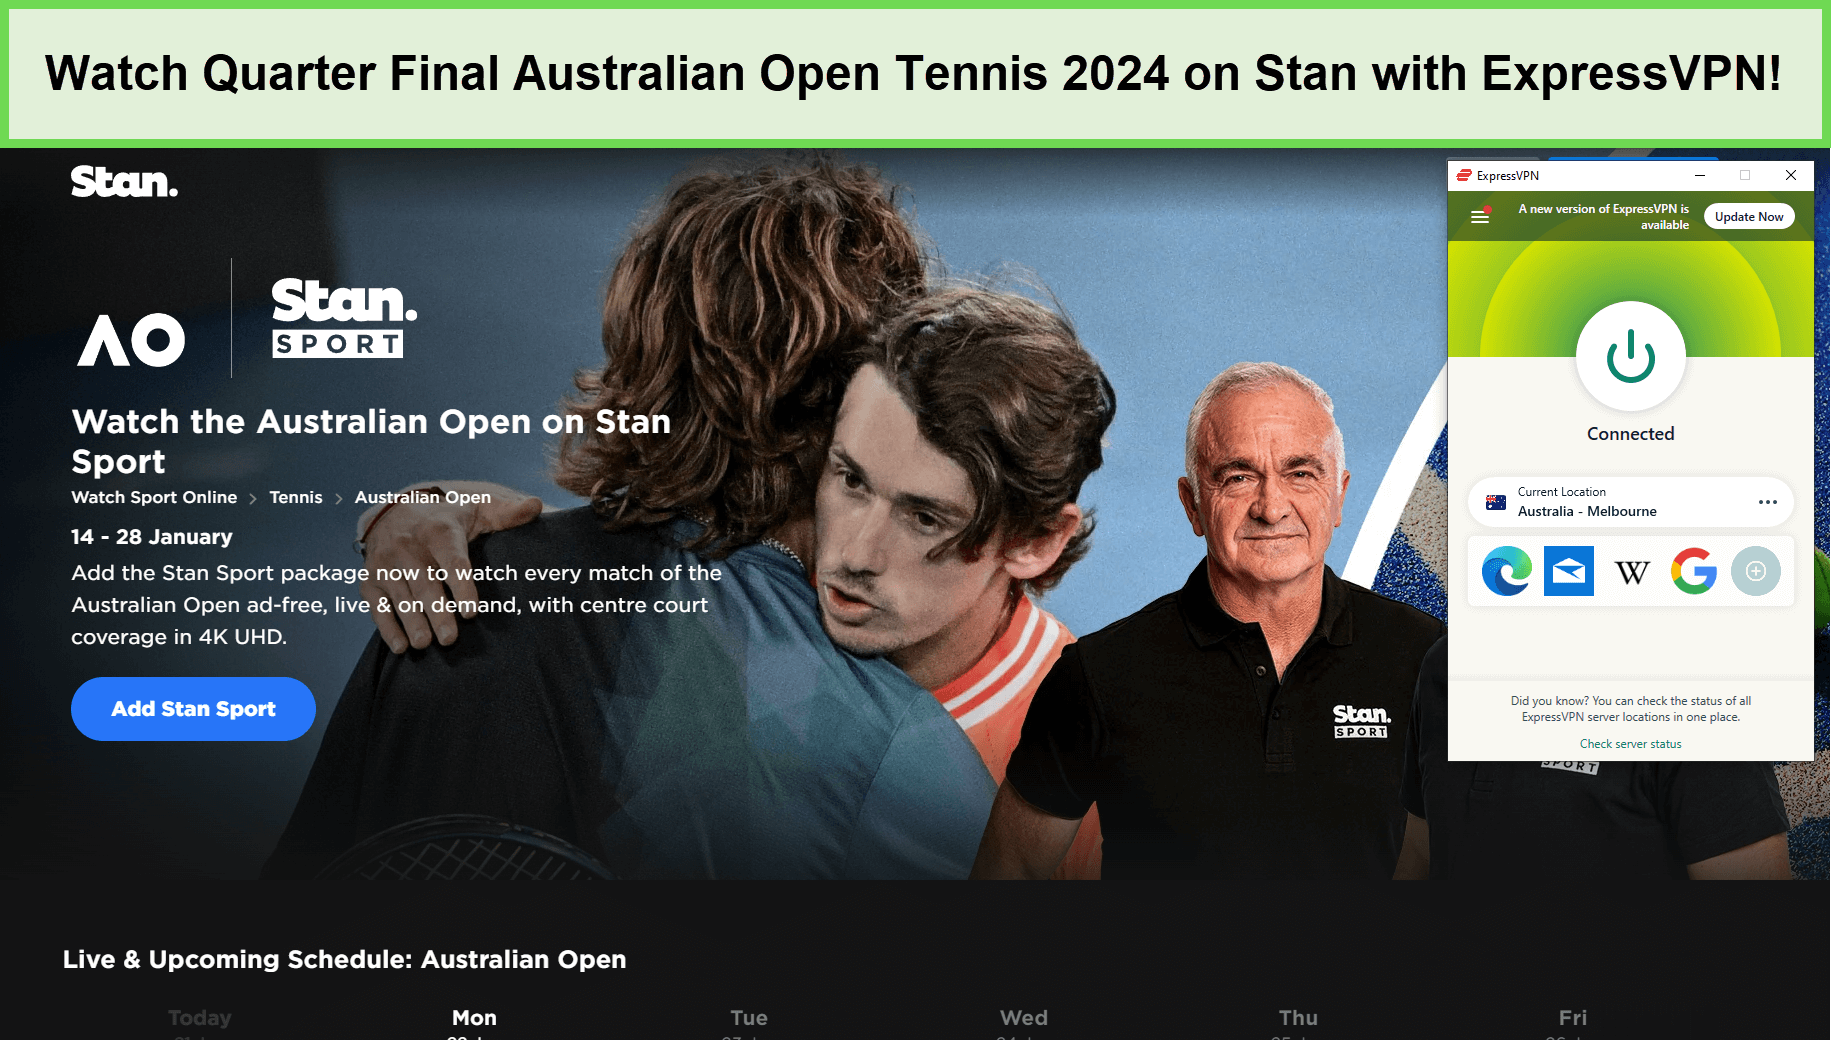  Ver-Cuartos-de-Final-Abierto-de-Australia-Tenis-2024- in - Espana -en-Stan-con-ExpressVPN 